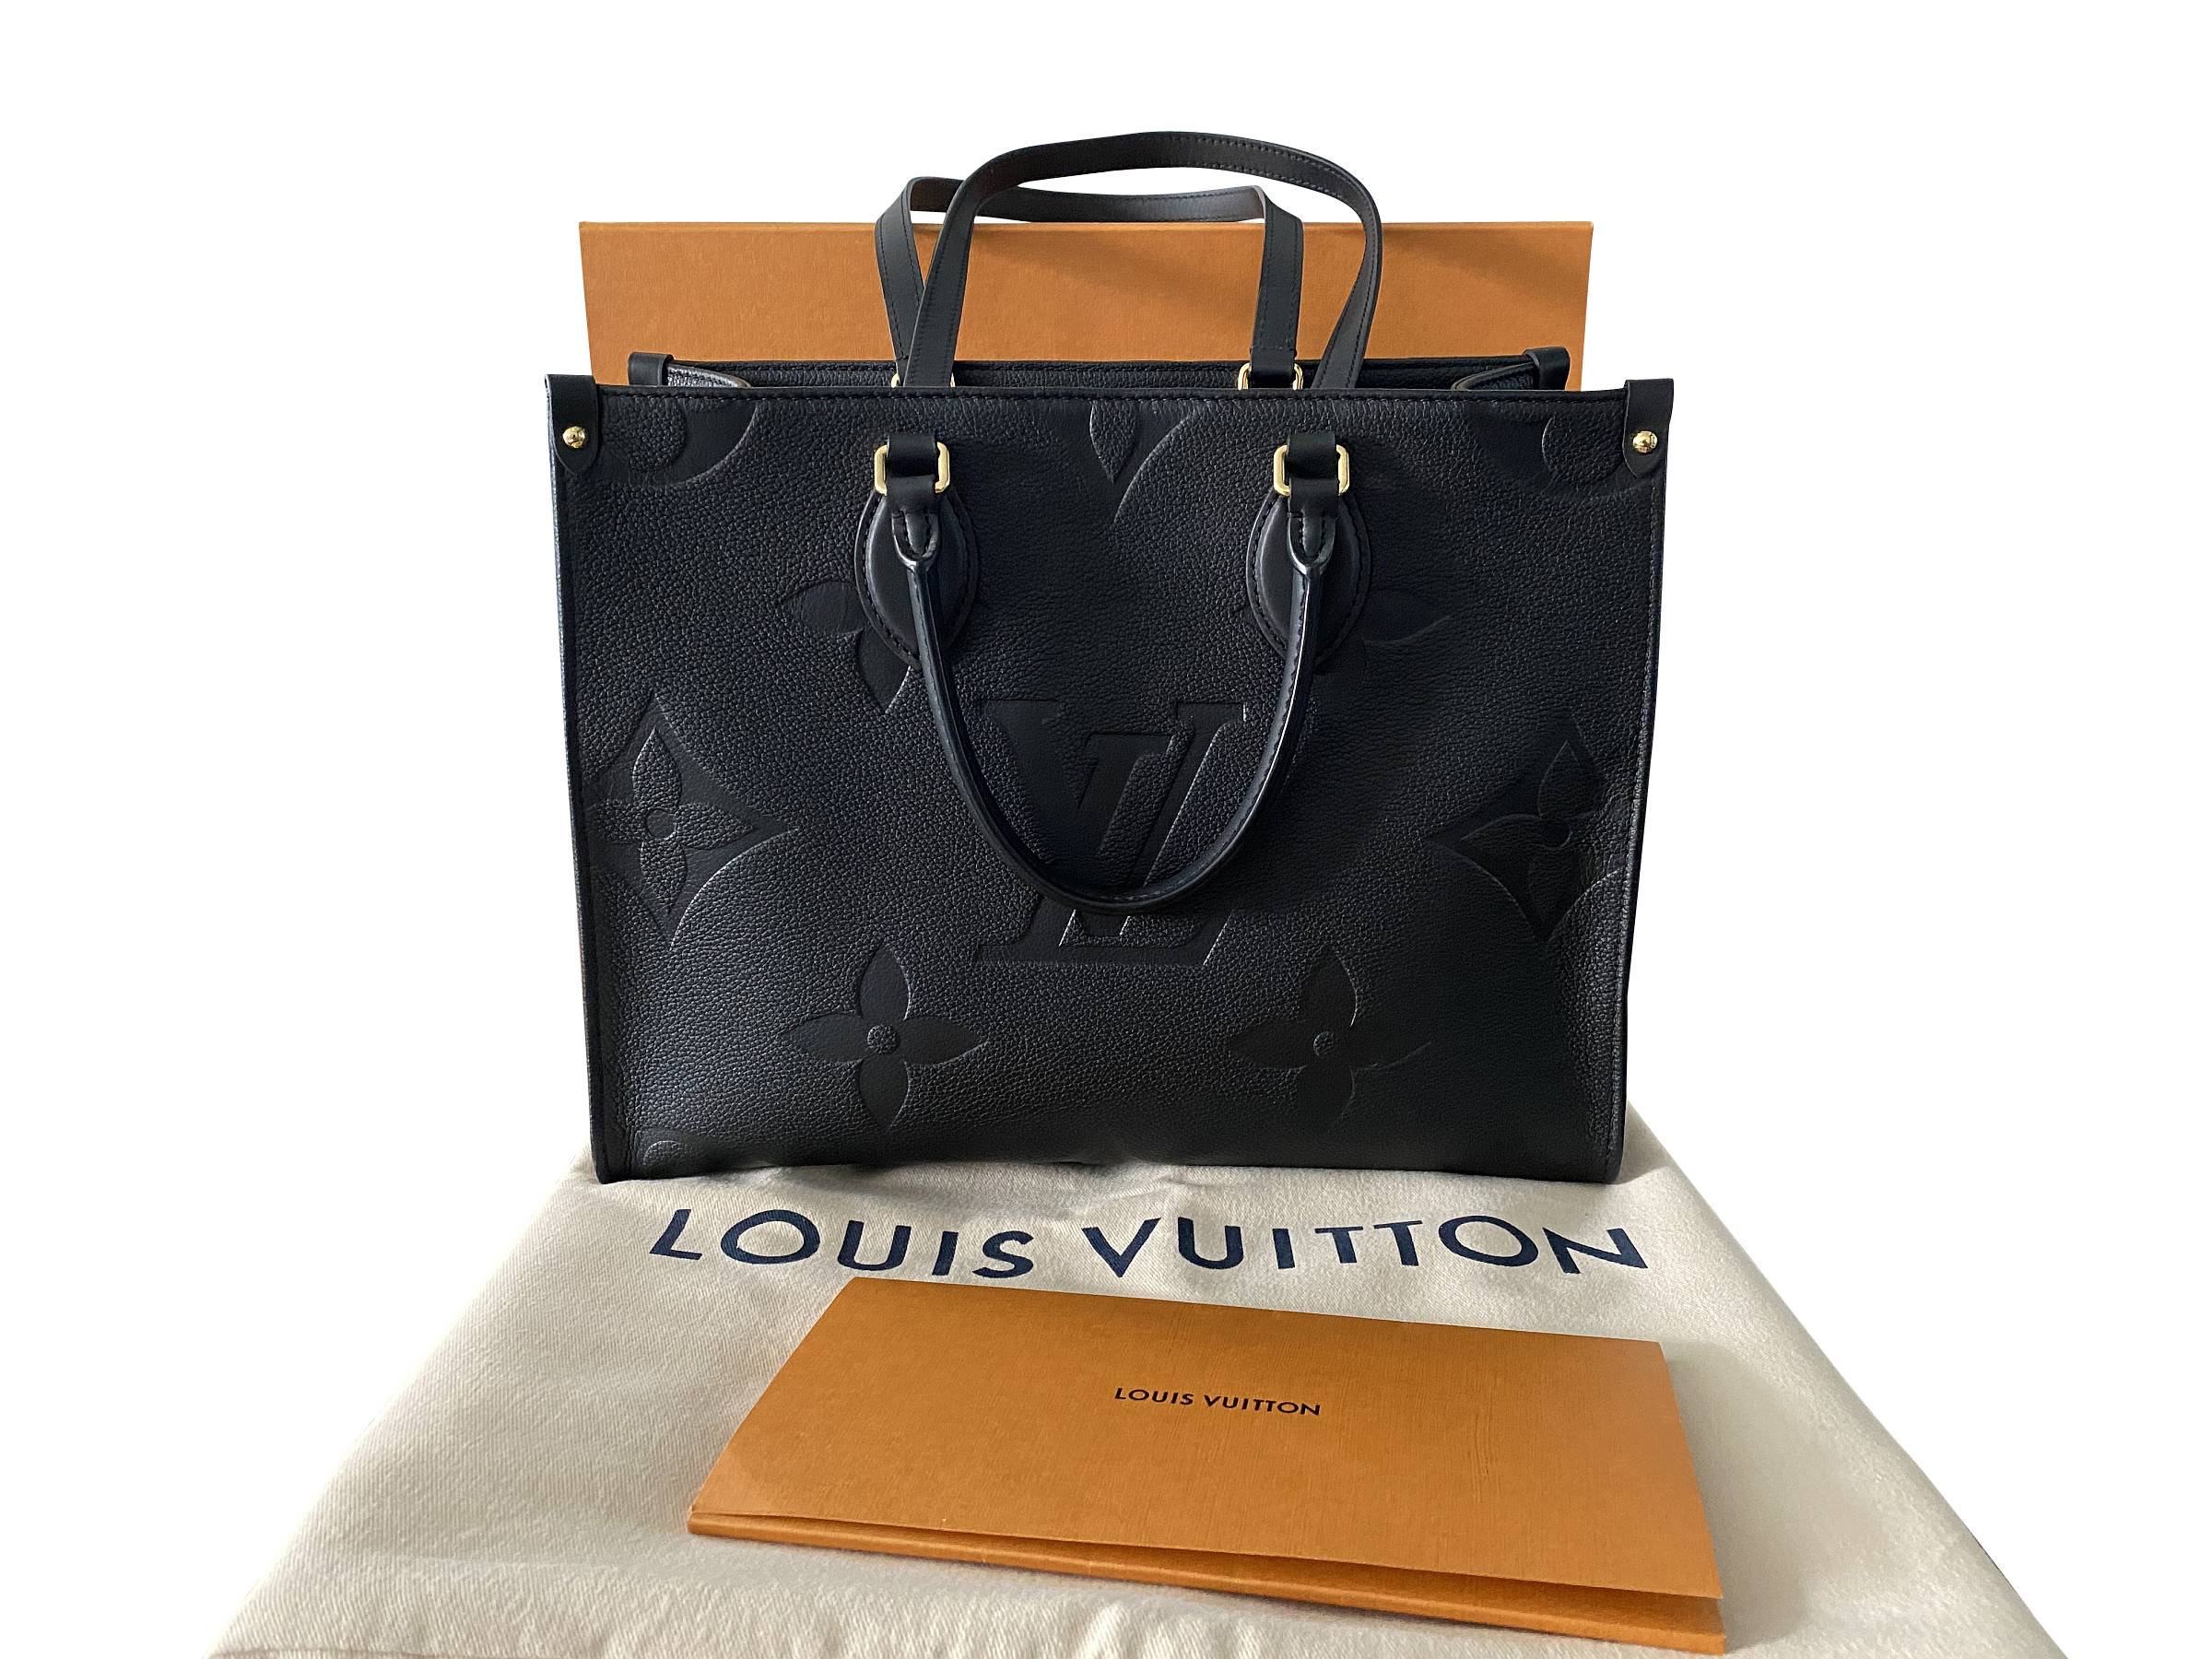 Louis Vuitton Shopper Schwarz In Der Kaufberatung!